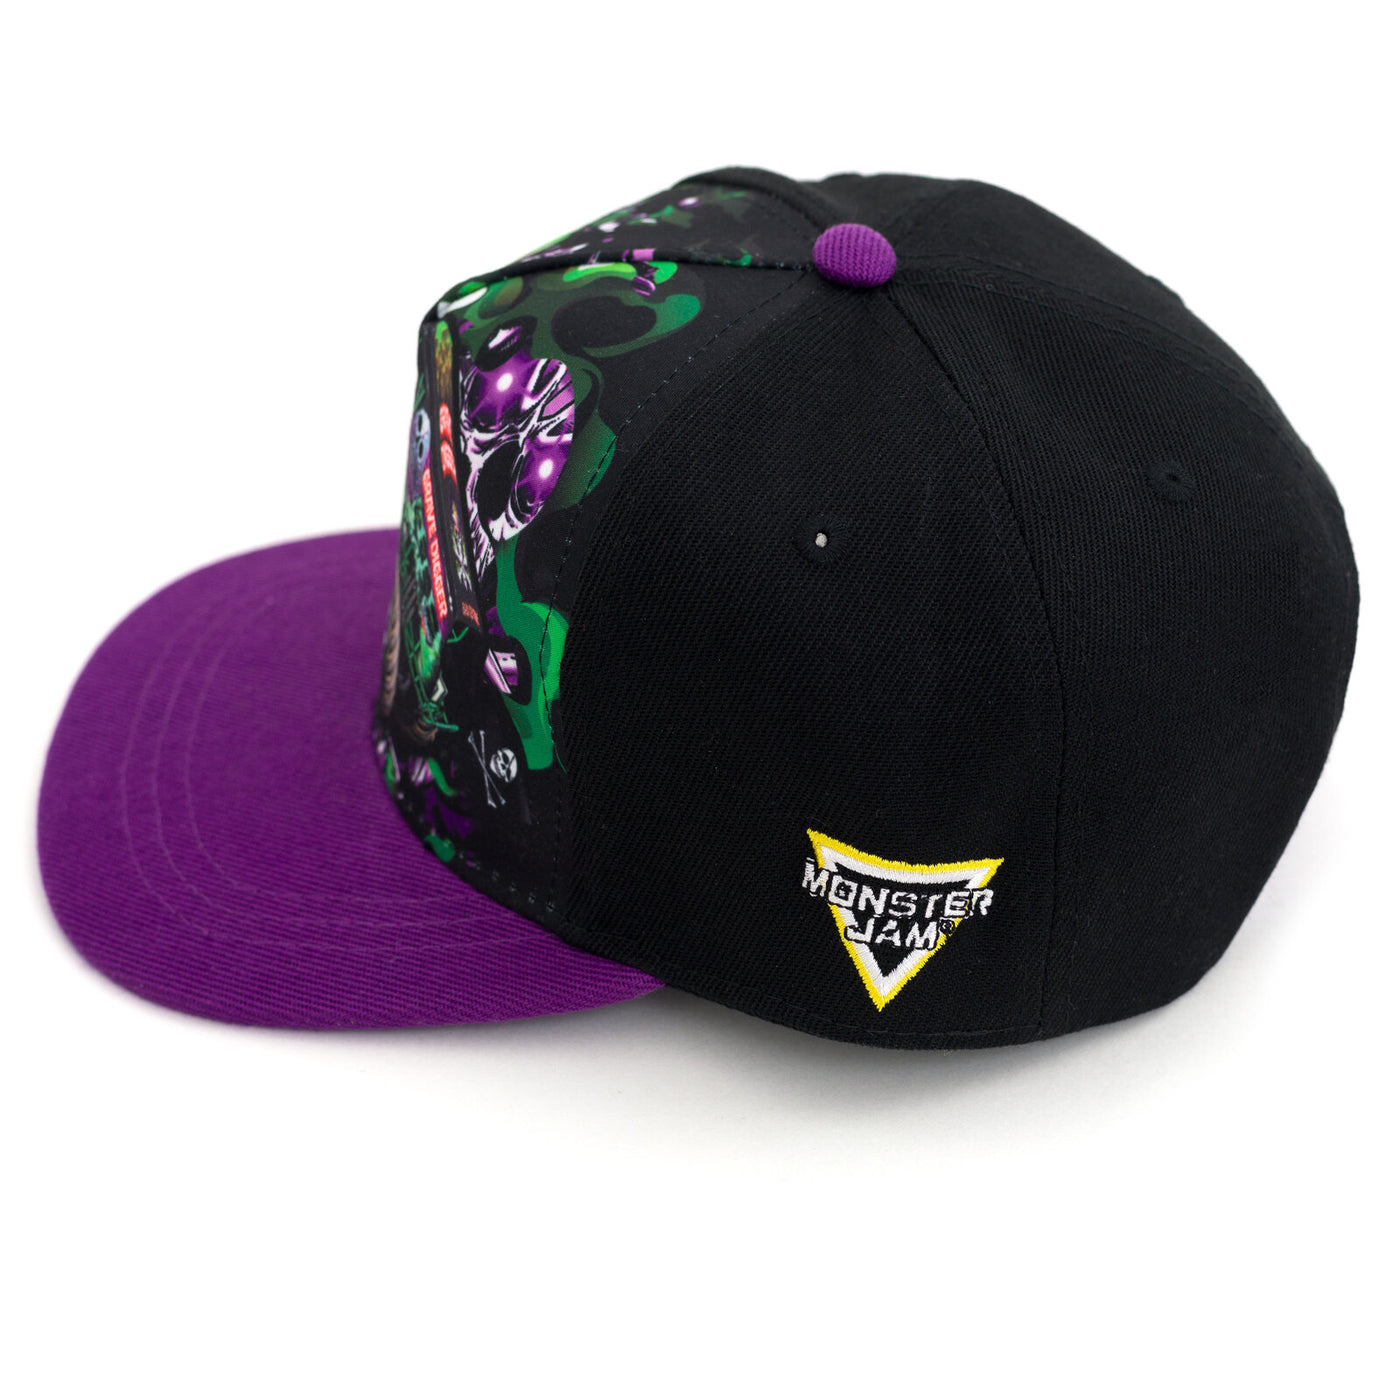 Monster Jam Grave Digger Adjustable Snapback Baseball Cap Hat